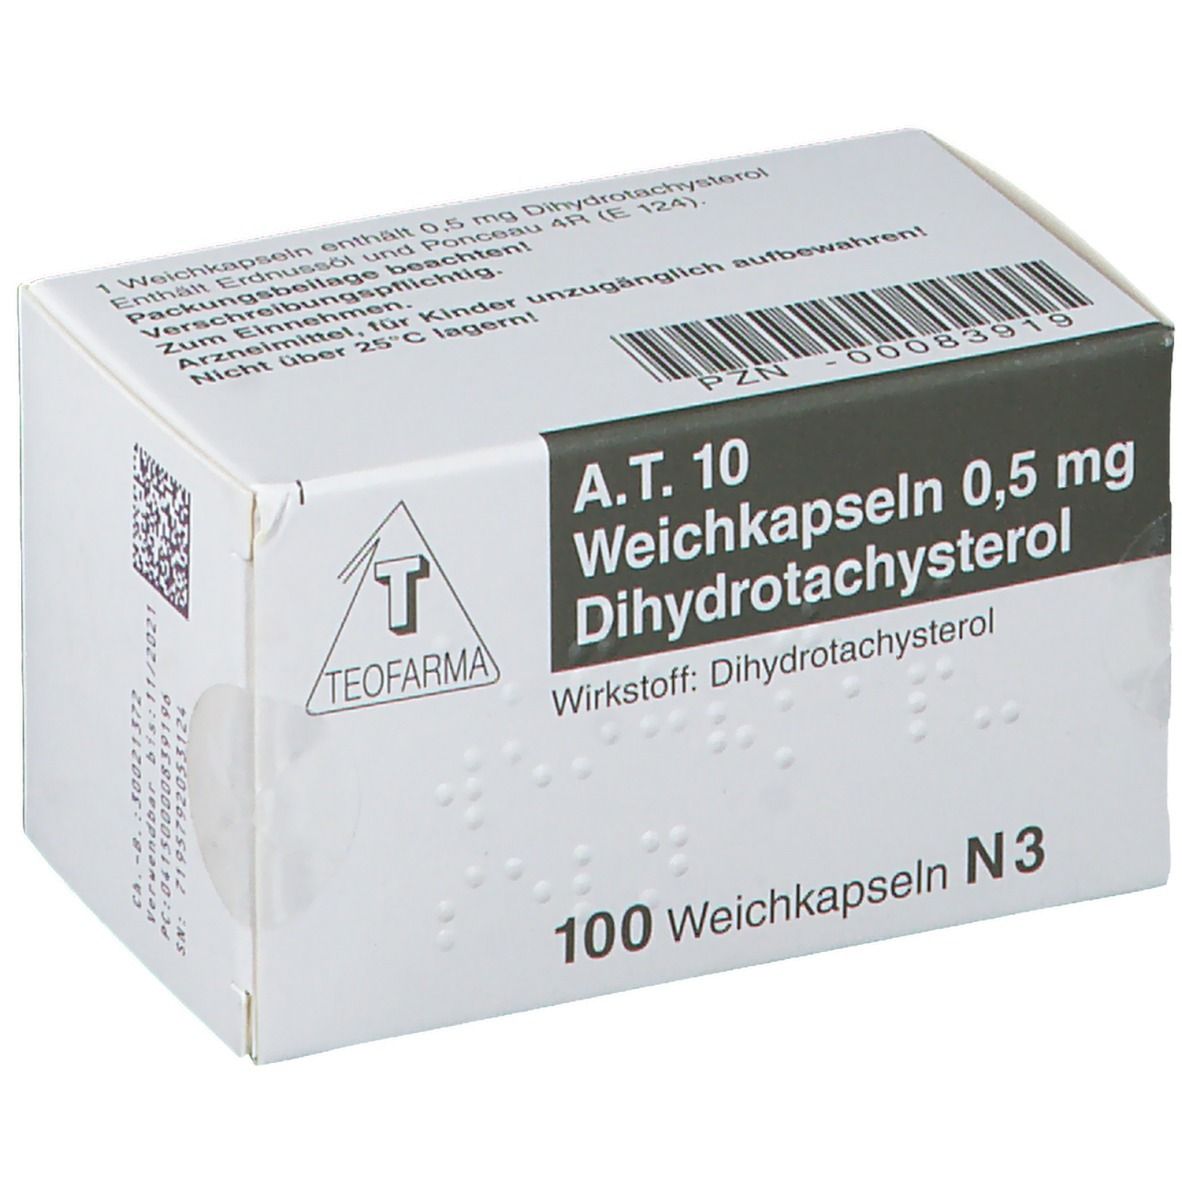 德国Teofarma生产的甲状旁腺激素（A.T.10）的副作用有哪些？